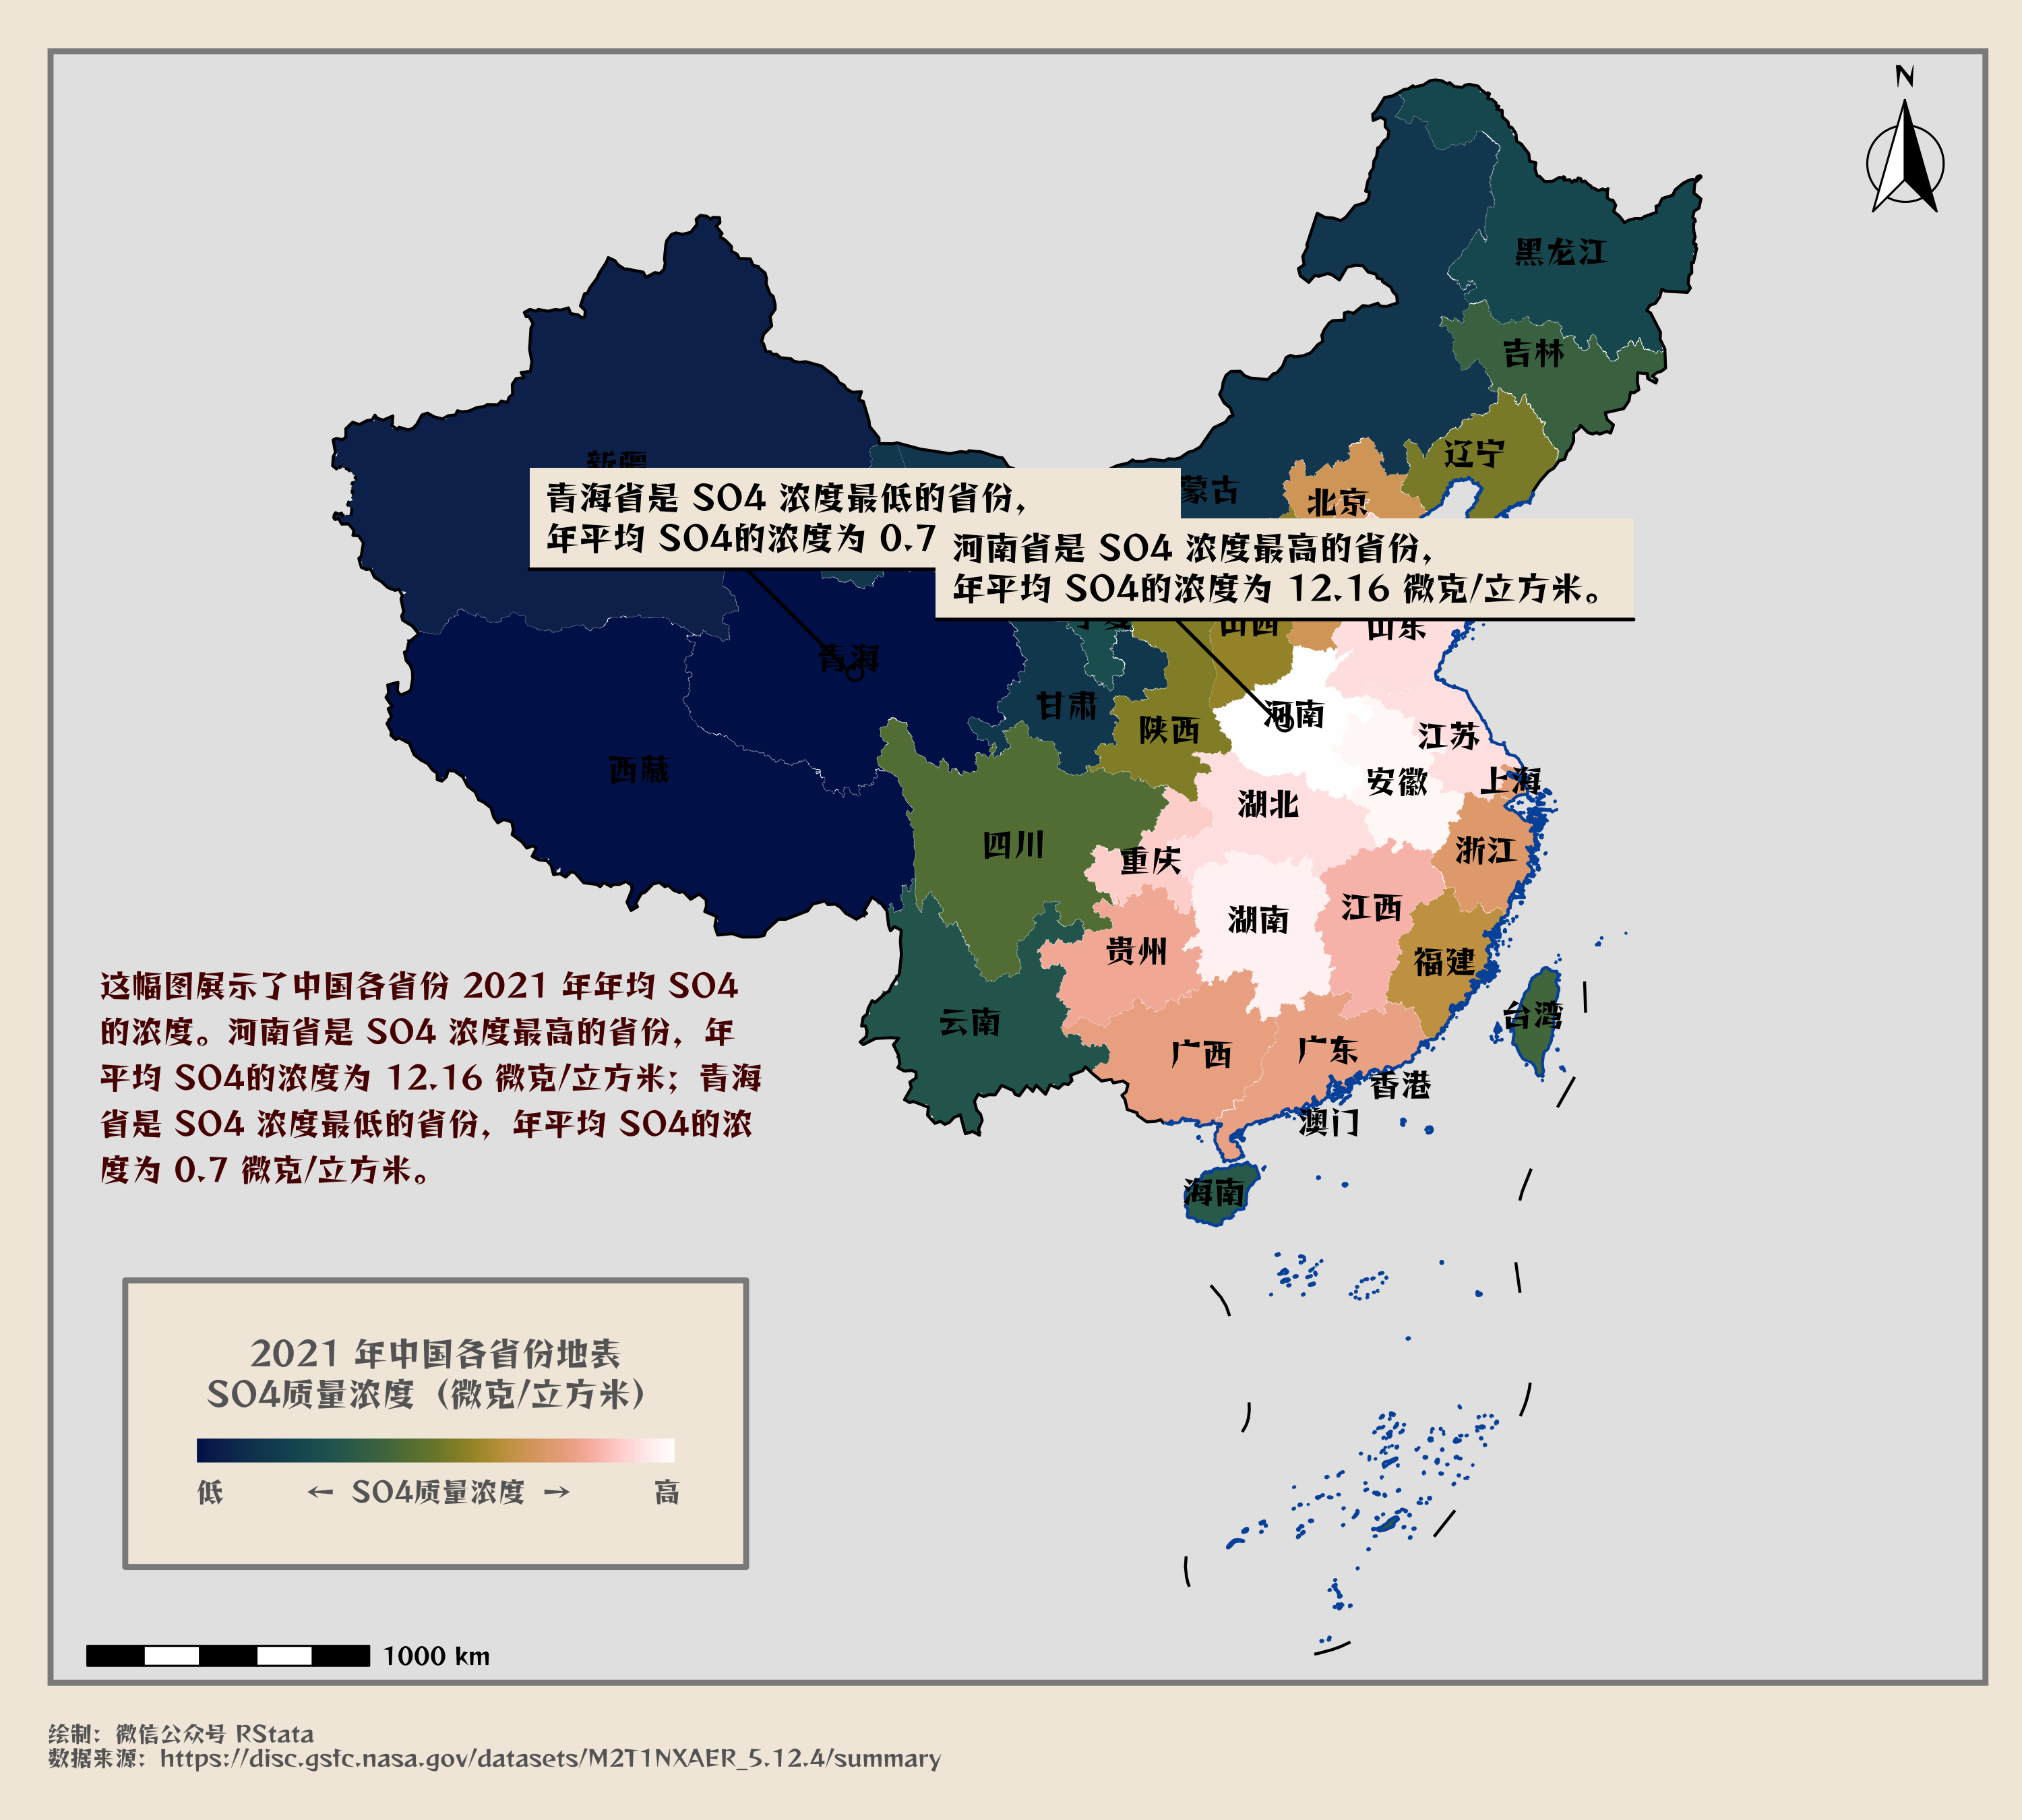 2021 年中国各省的年均 SO4 浓度分布